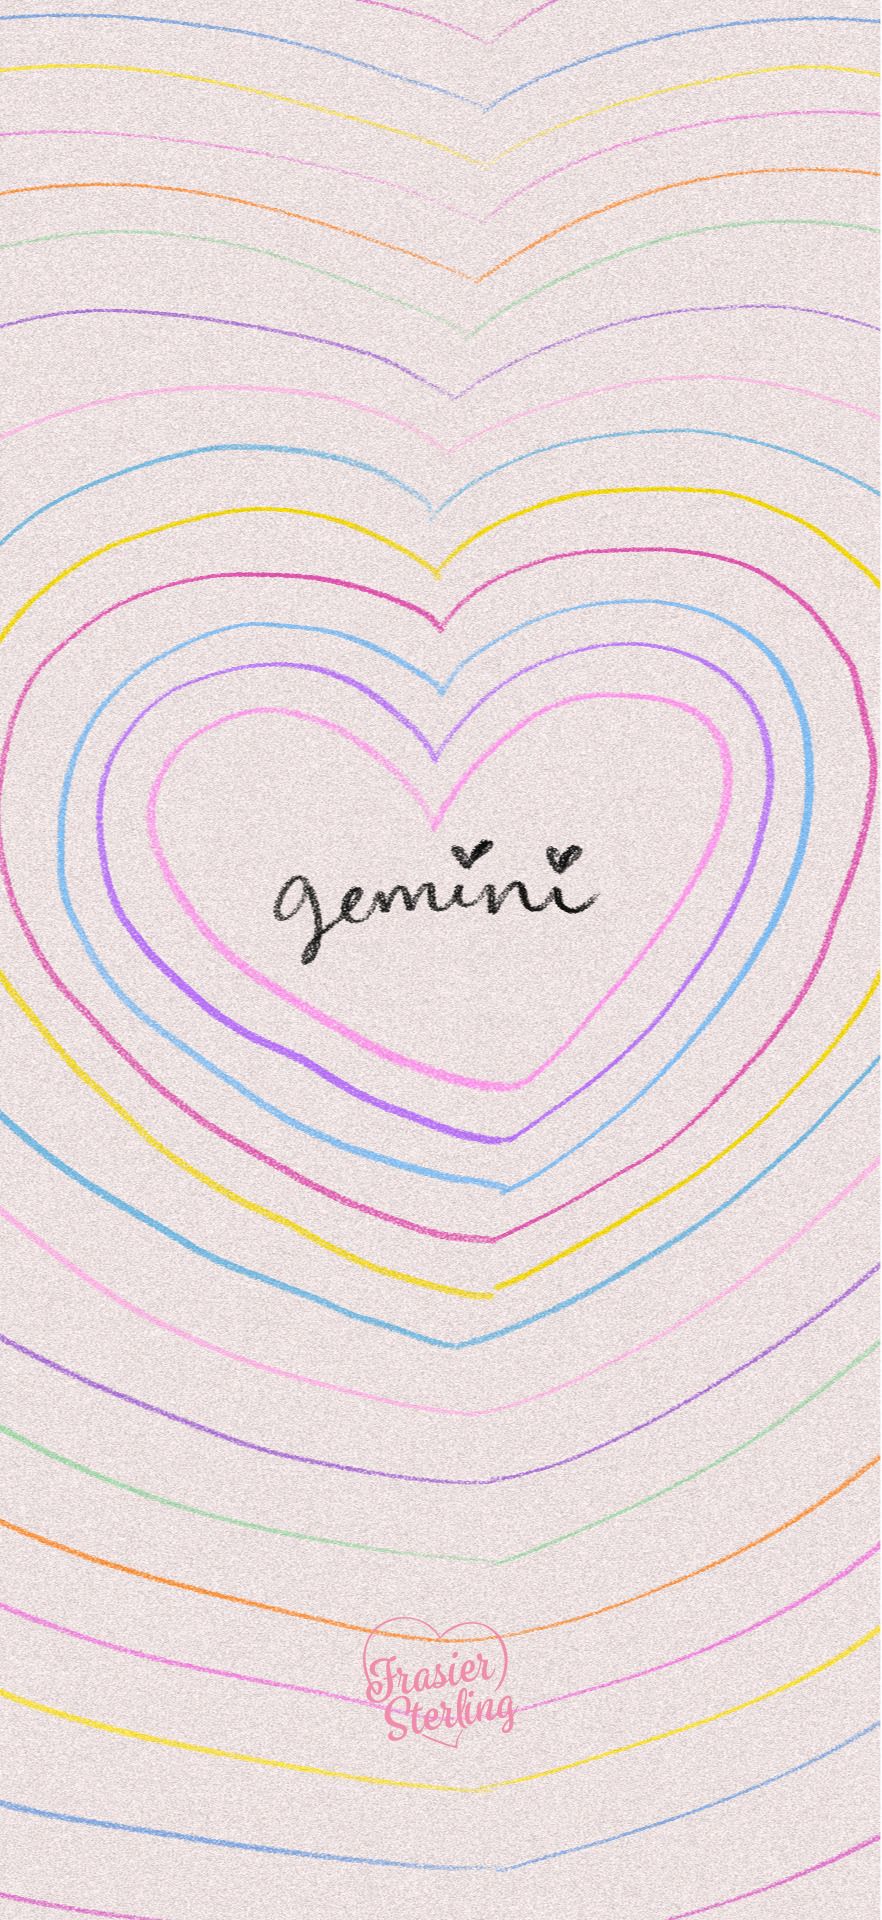 IPhone wallpaper for Gemini's!  - Gemini